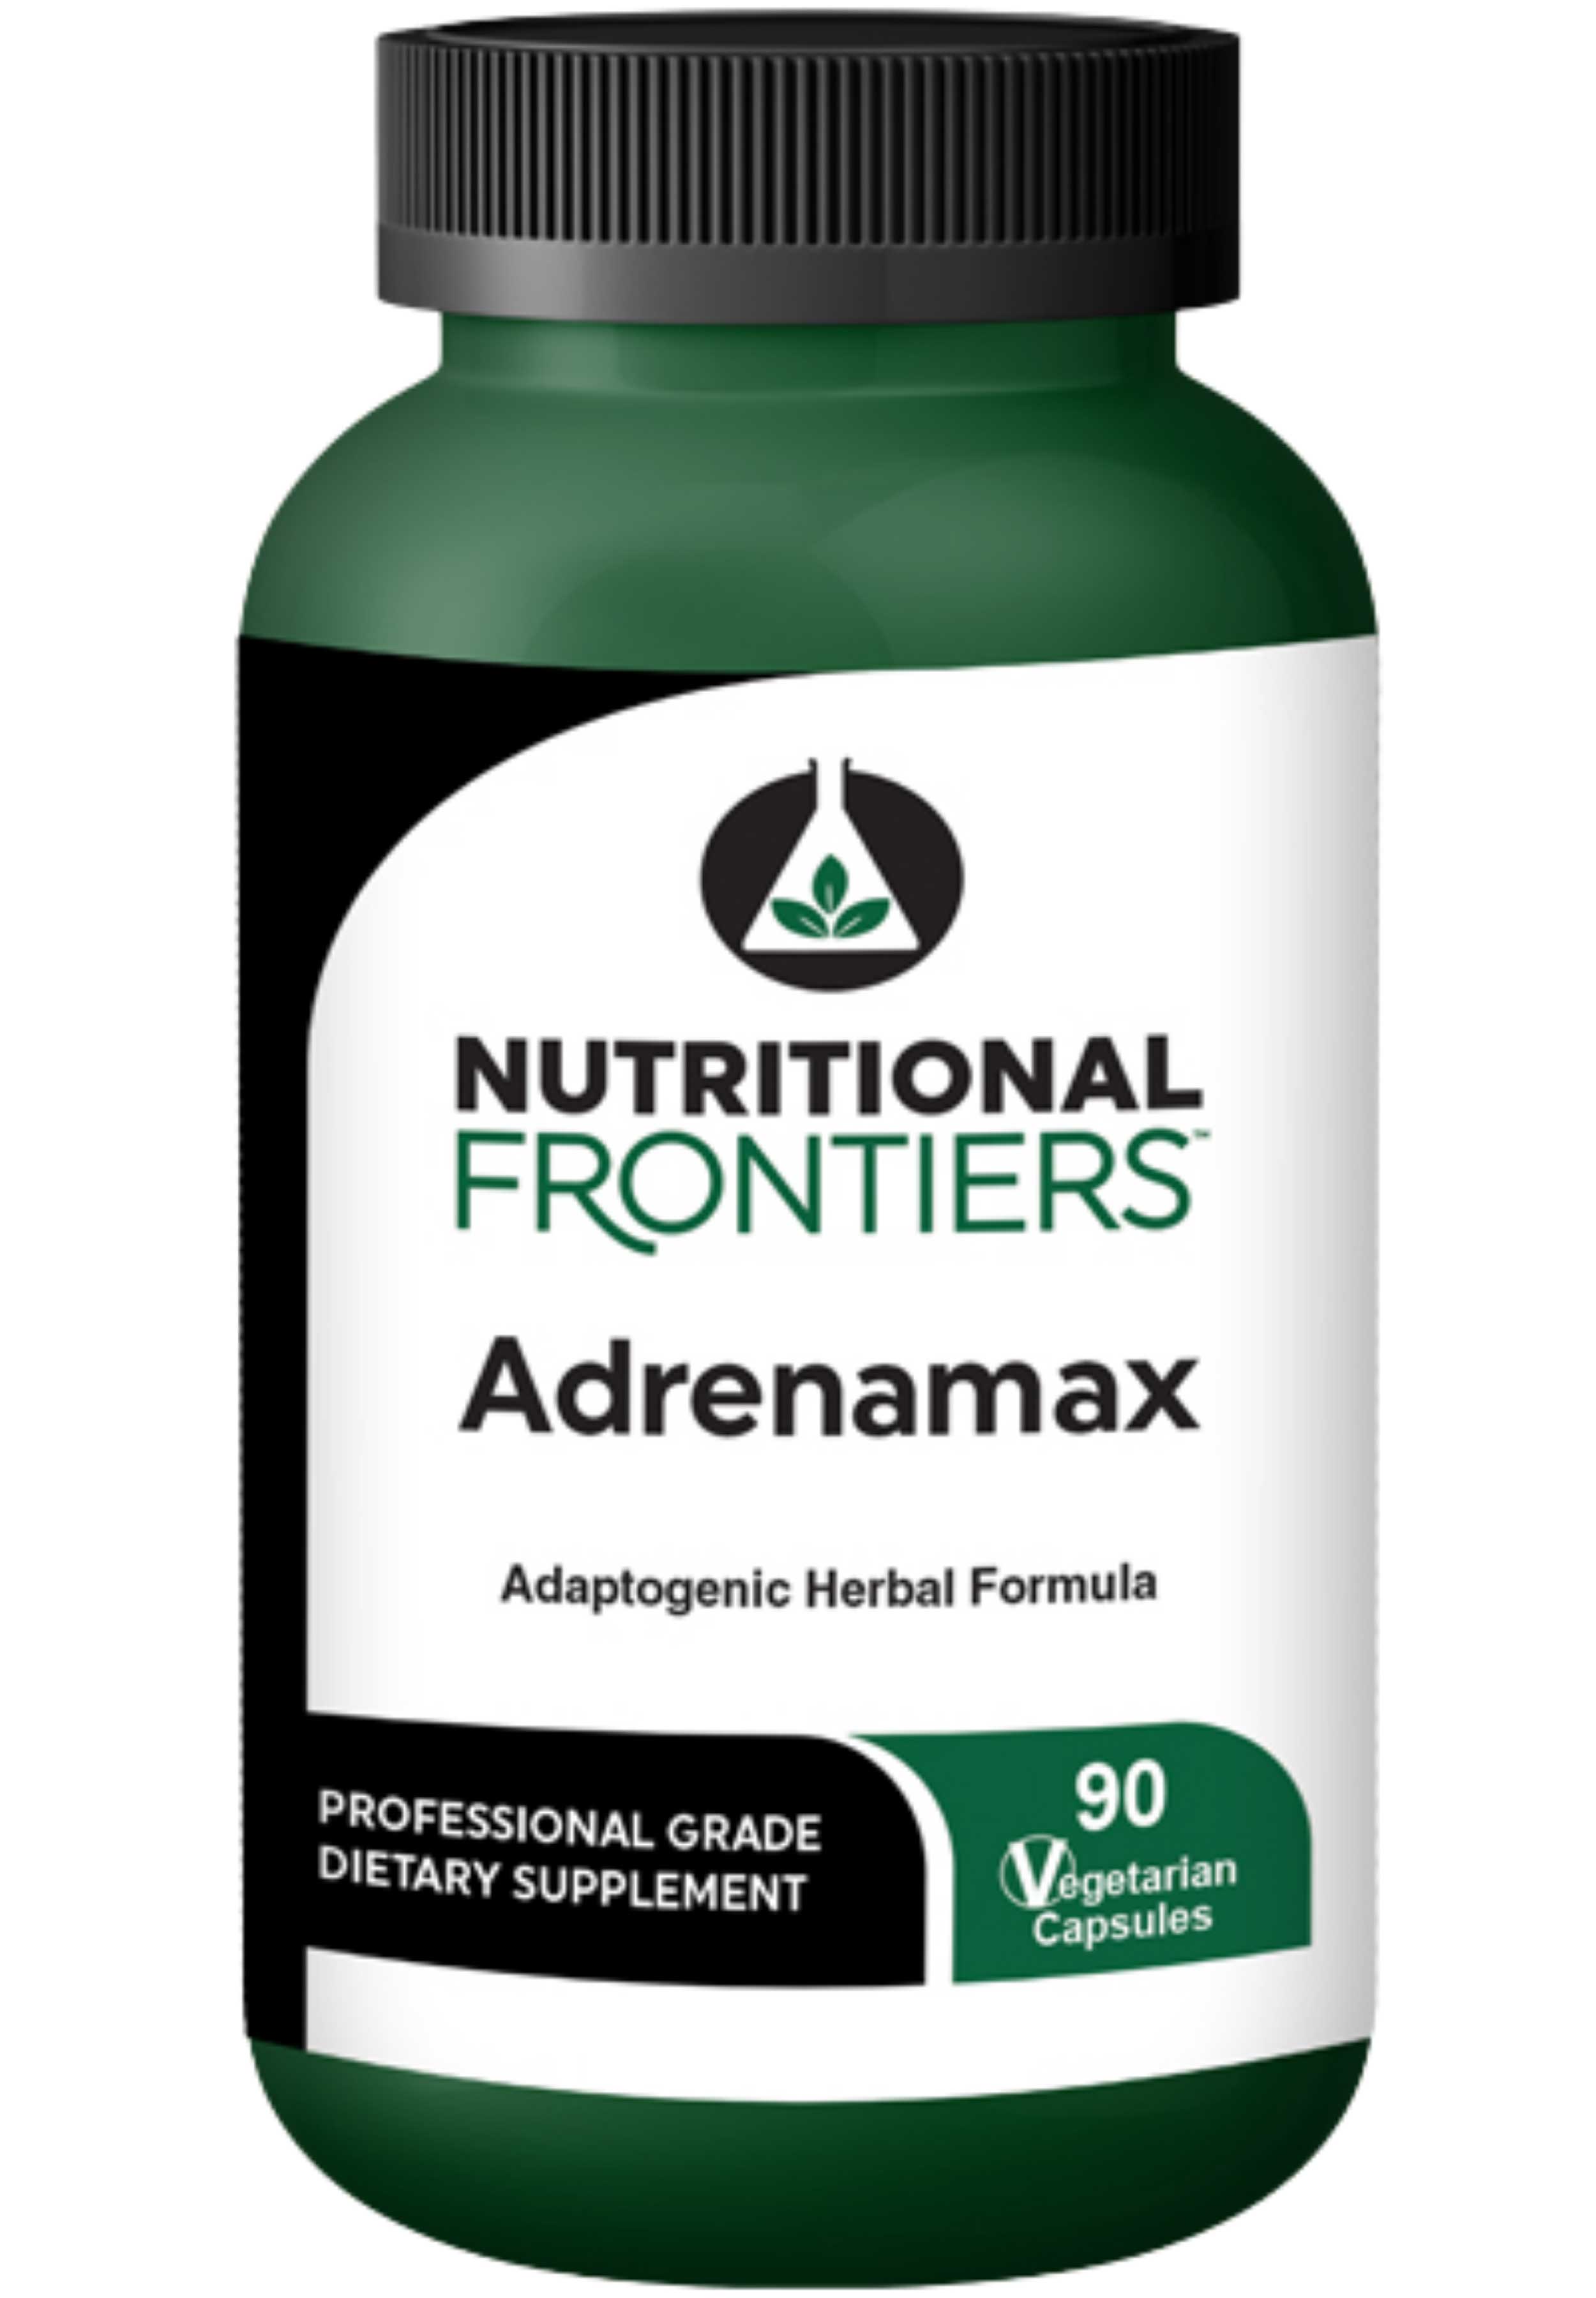 Nutritional Frontiers AdrenaMax